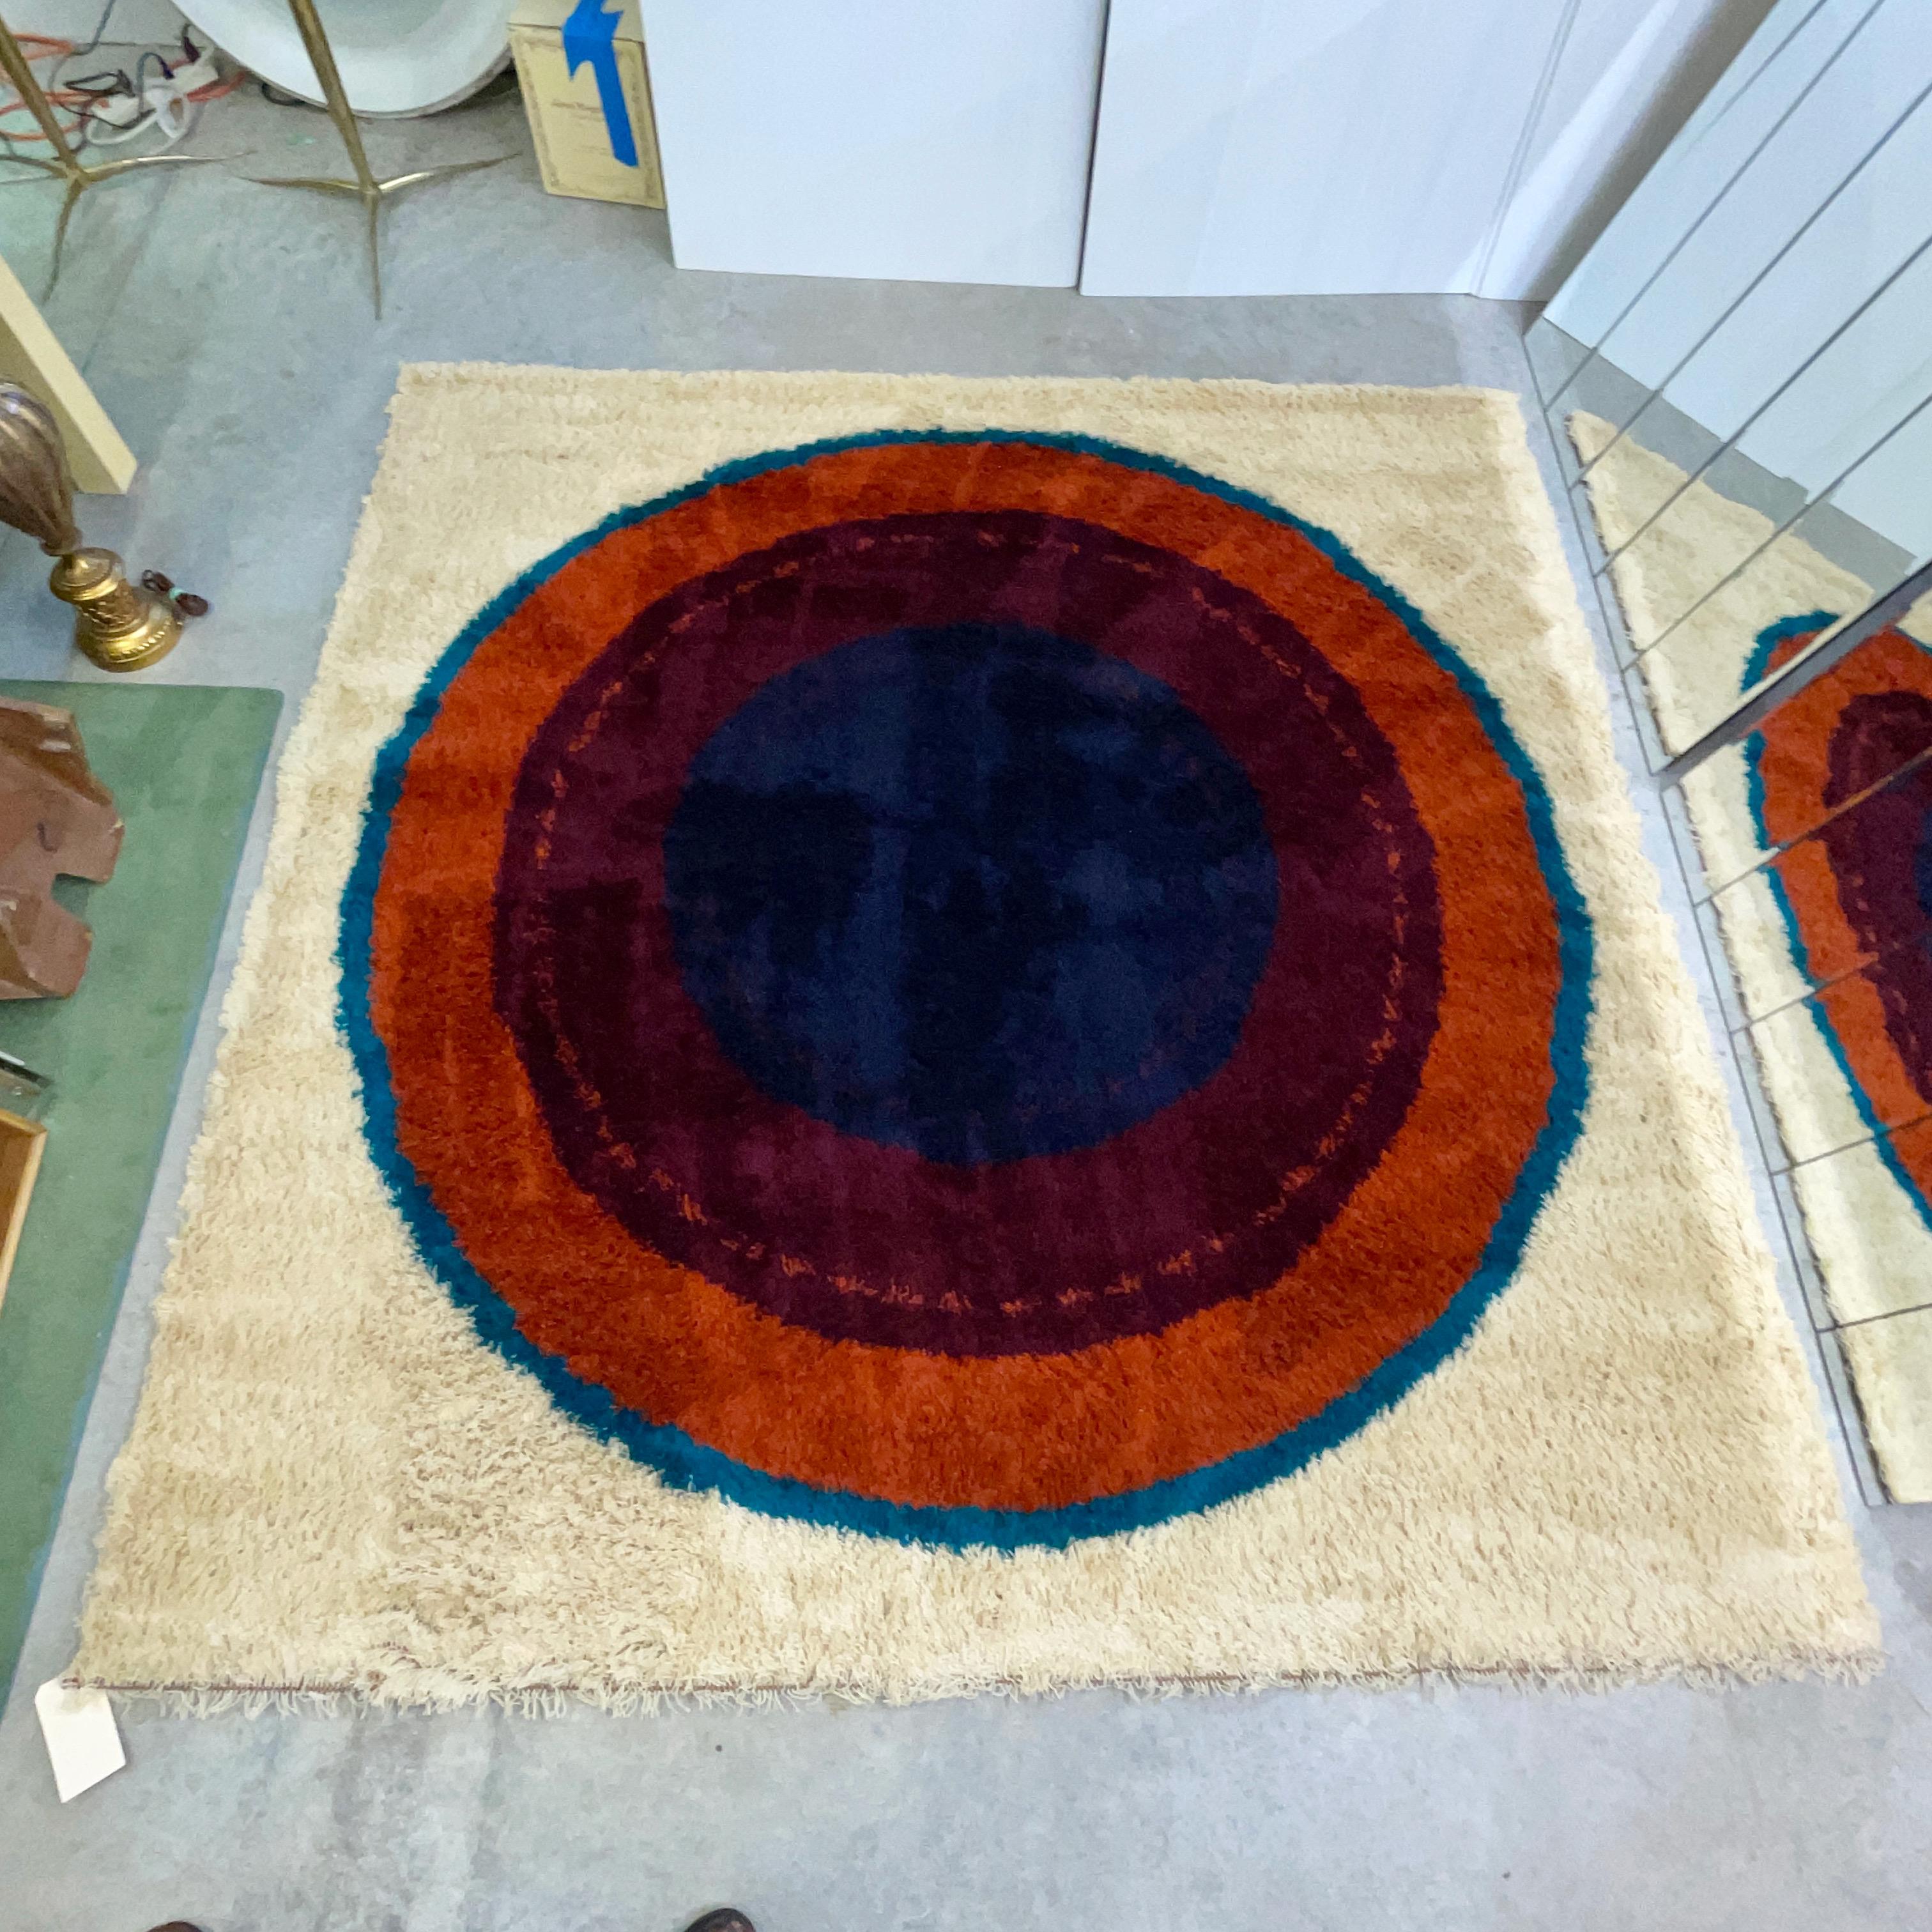 Quadratischer dänischer Rya-Teppich, 100% Wolle, hergestellt in den 1960er Jahren, aber nie benutzt. 
Wurde über 50 Jahre lang gerollt und eingewickelt aufbewahrt. Ihre Füße werden die ersten sein, die sie betreten.
Produziert in Dänemark von